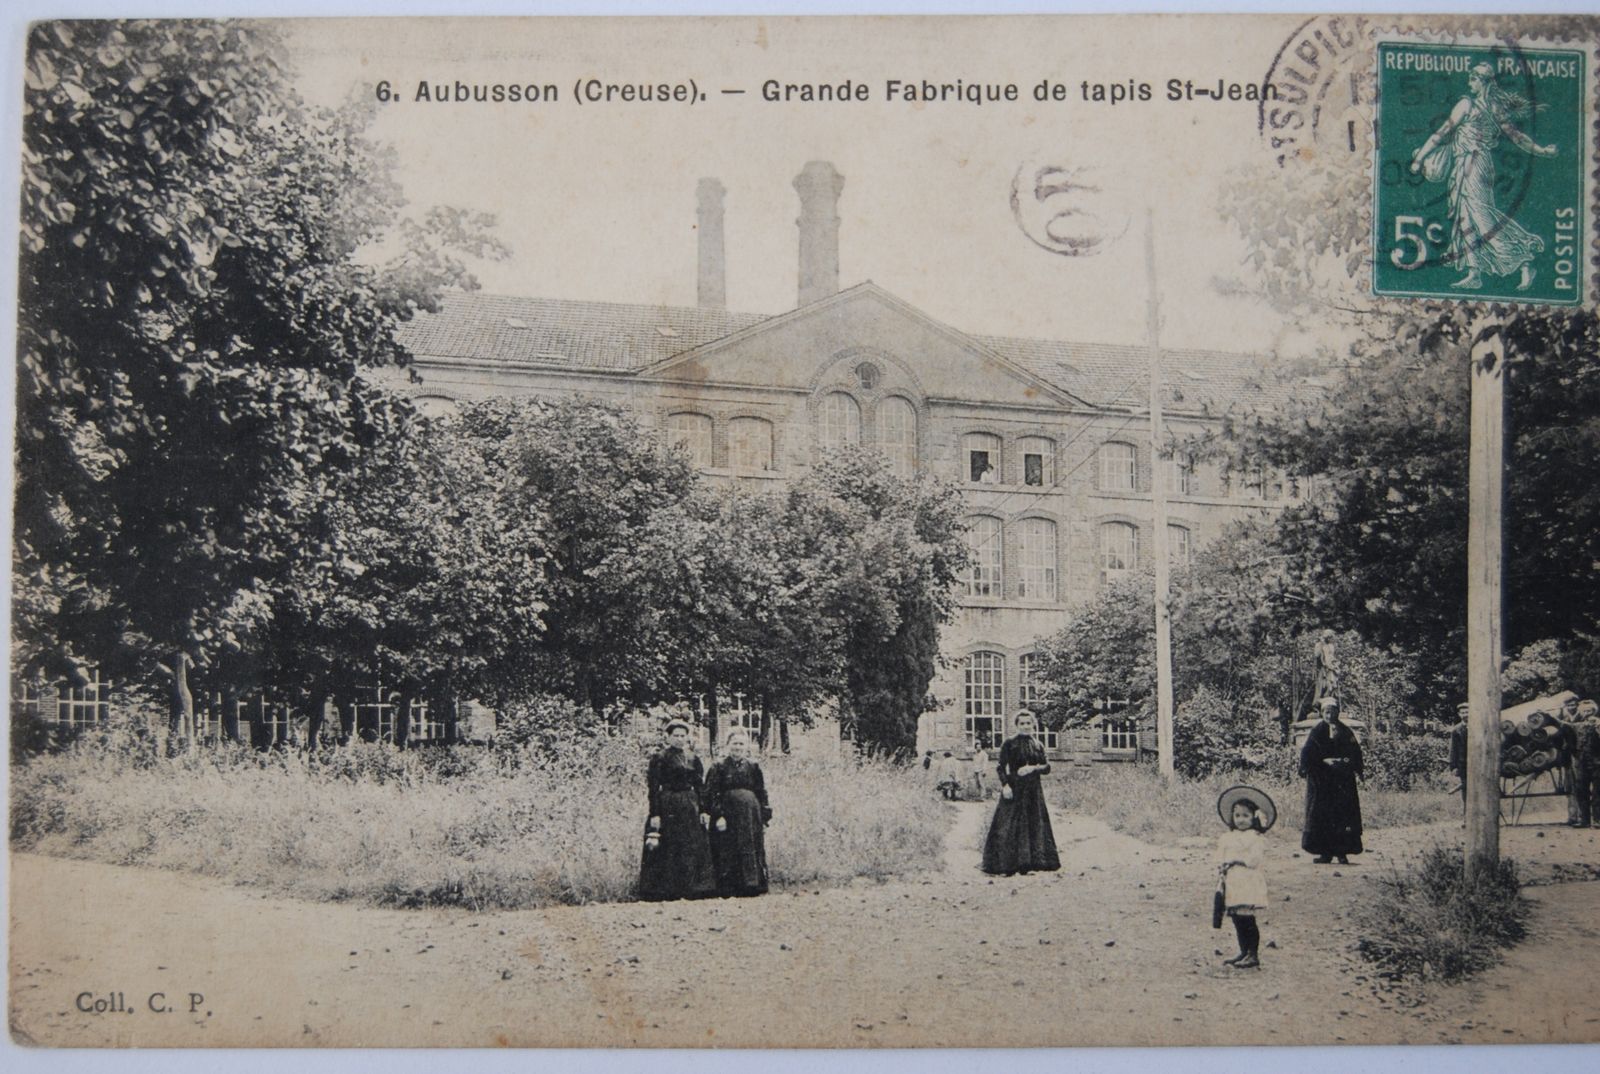 Carte postale de la manufacture Sallandrouze, au début du 20e siècle (AD 23) : l'entrée, du côté de la rue Saint-Jean, signalée par un grand fronton triangulaire